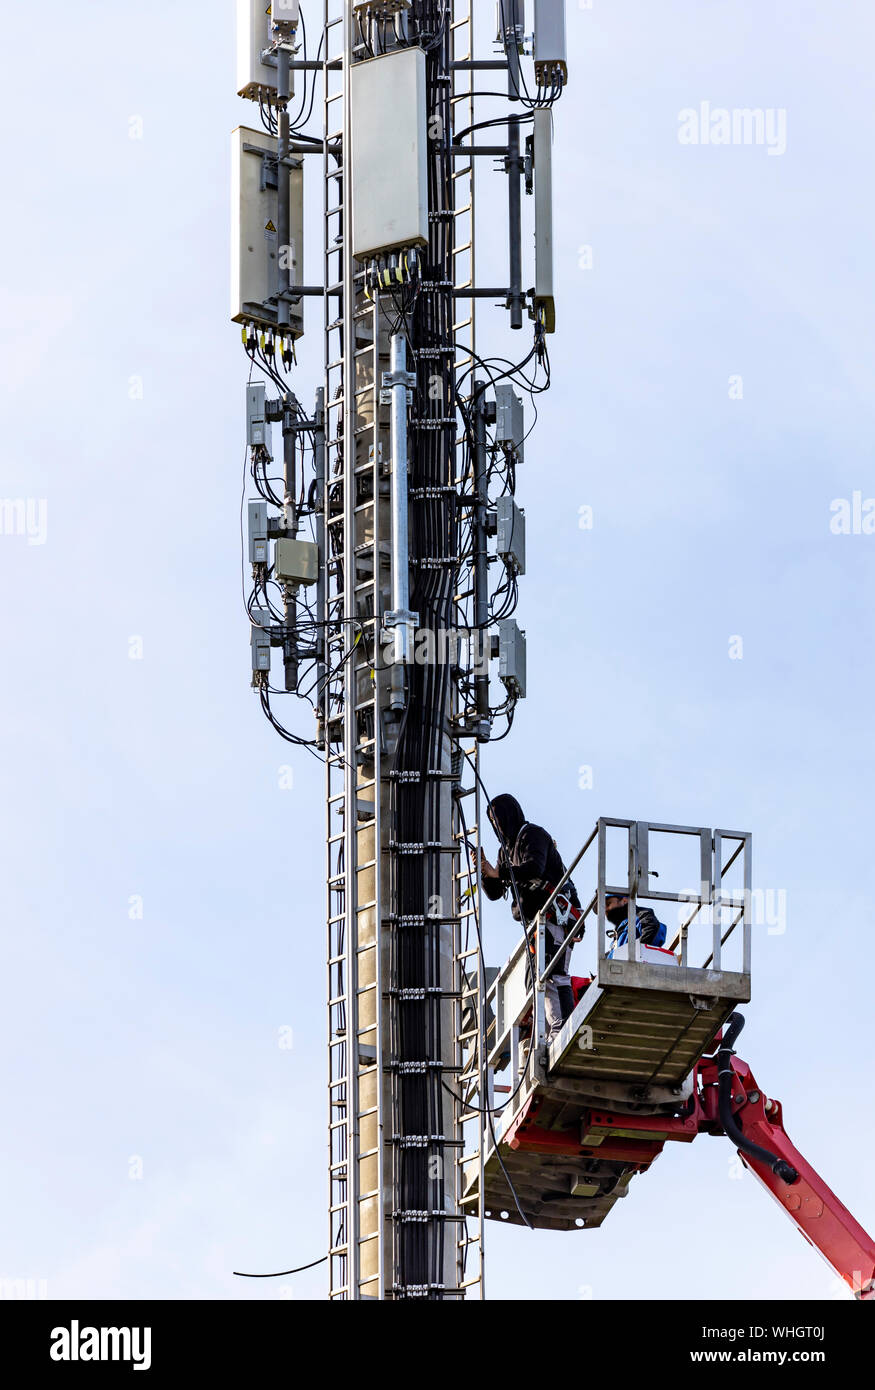 Mât de radio, radio mobile, téléphone, seront mis à niveau, équipé de nouvelles antennes. Allemagne Banque D'Images